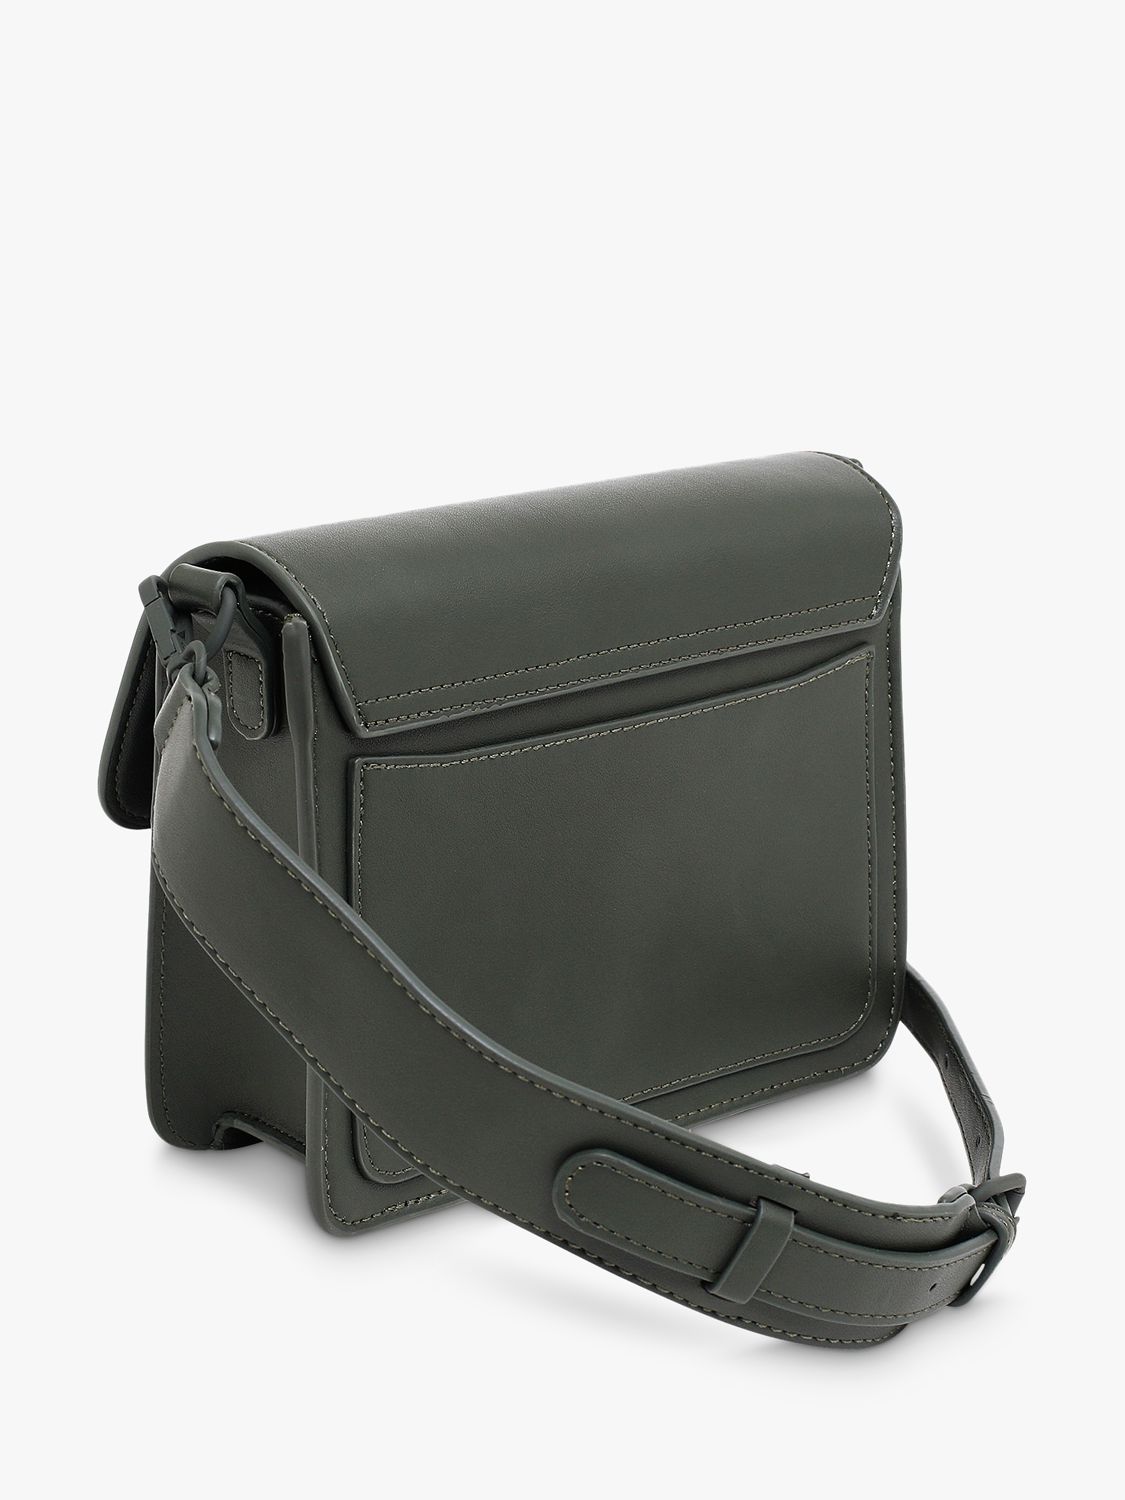 Buy HVISK Cayman Pocket Structure Smooth Cross Body Bag Online at johnlewis.com